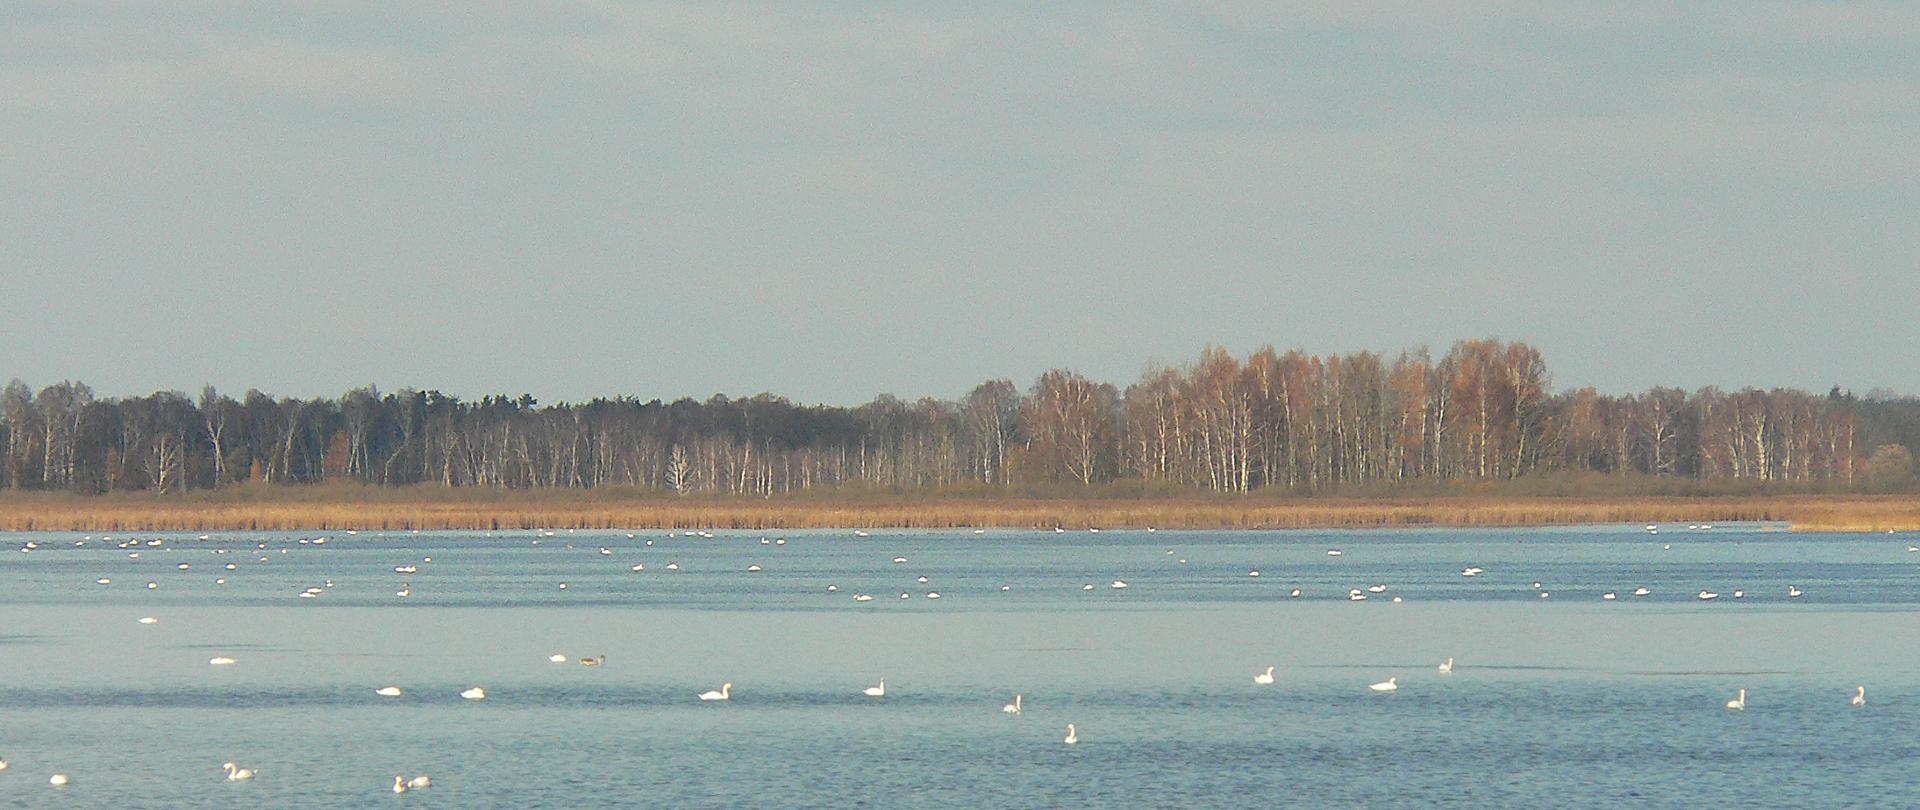 Zdjęcie przedstawia widok na Jezioro Łuknajno.